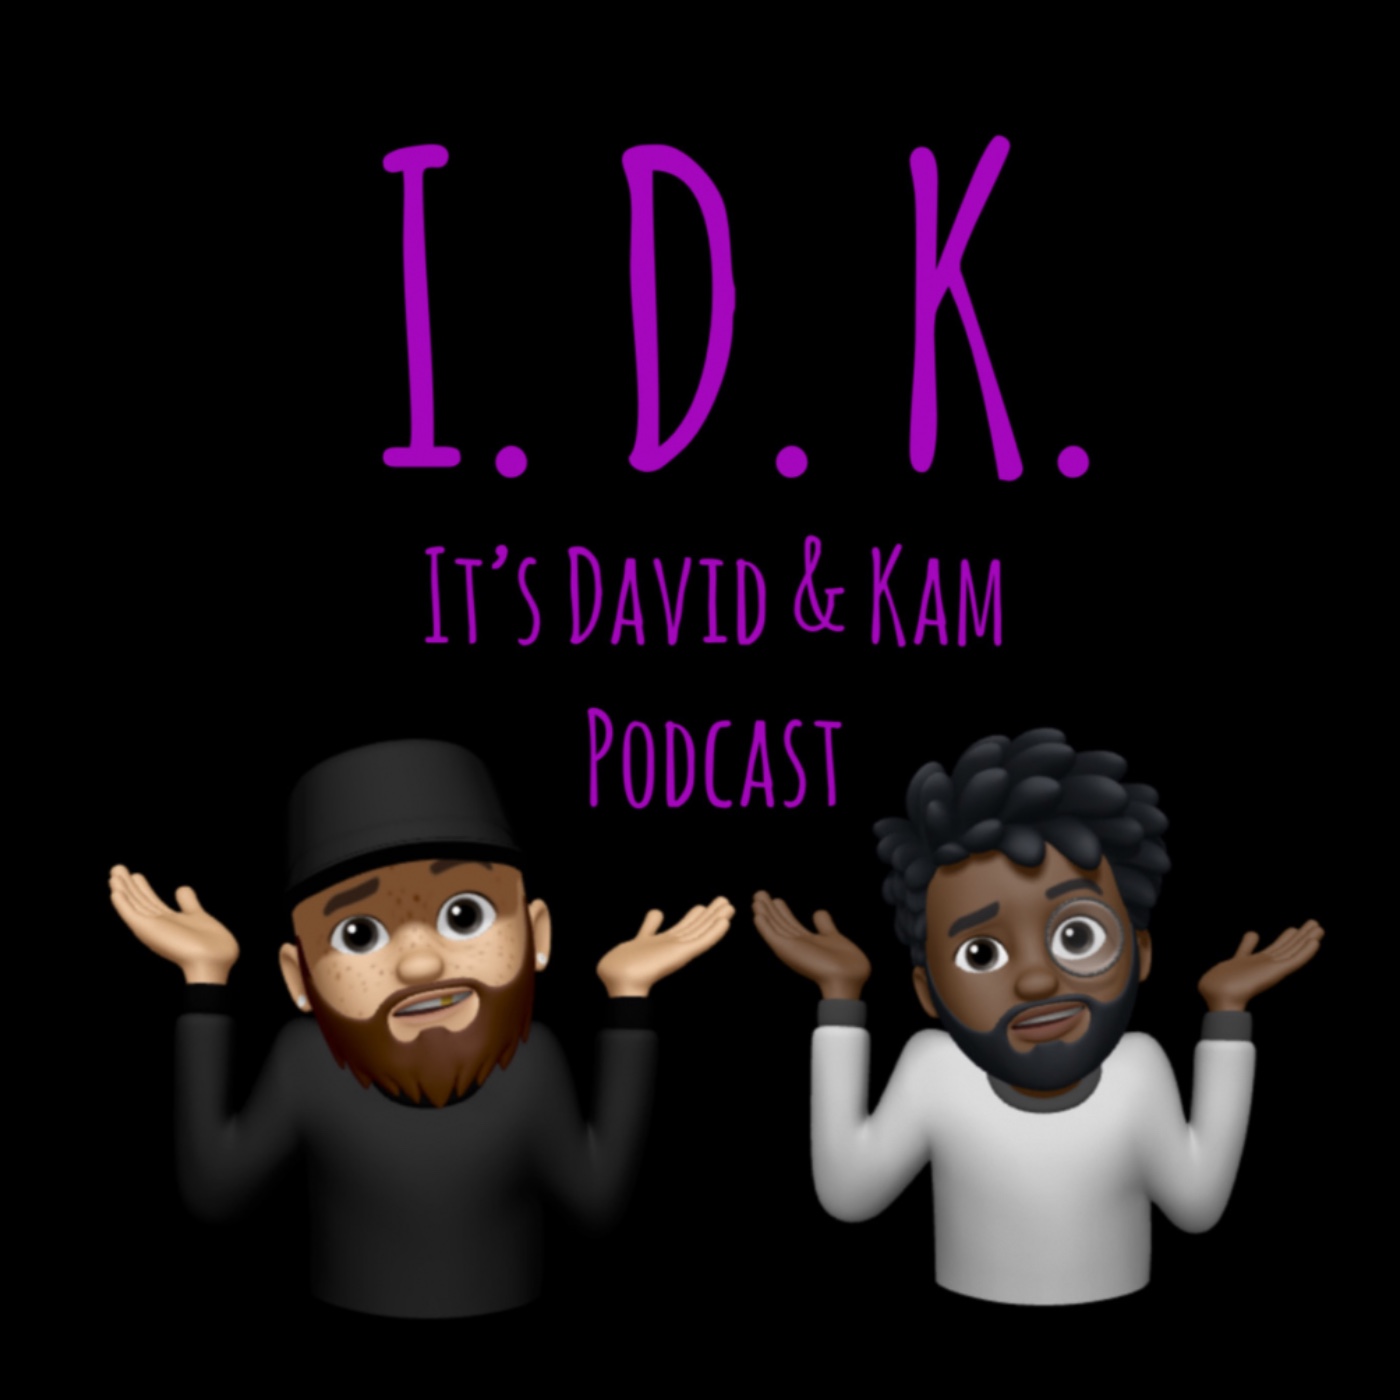 I.D.K. It’s David & Kam